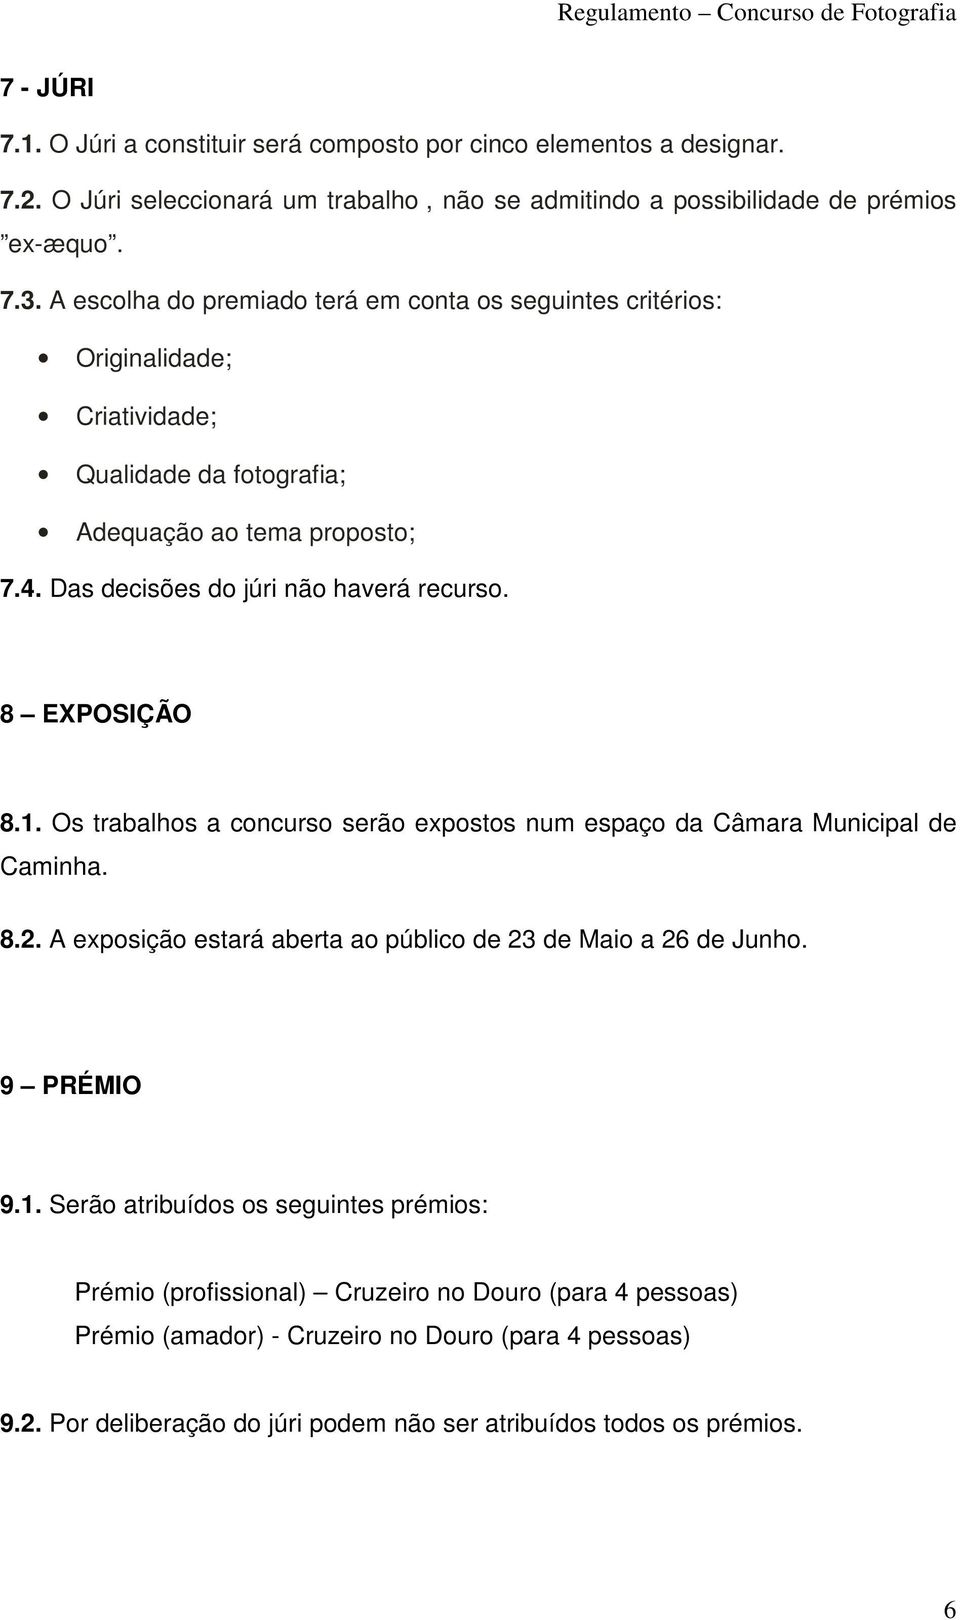 8 EXPOSIÇÃO 8.1. Os trabalhos a concurso serão expostos num espaço da Câmara Municipal de Caminha. 8.2. A exposição estará aberta ao público de 23 de Maio a 26 de Junho. 9 PRÉMIO 9.1. Serão atribuídos os seguintes prémios: Prémio (profissional) Cruzeiro no Douro (para 4 pessoas) Prémio (amador) - Cruzeiro no Douro (para 4 pessoas) 9.